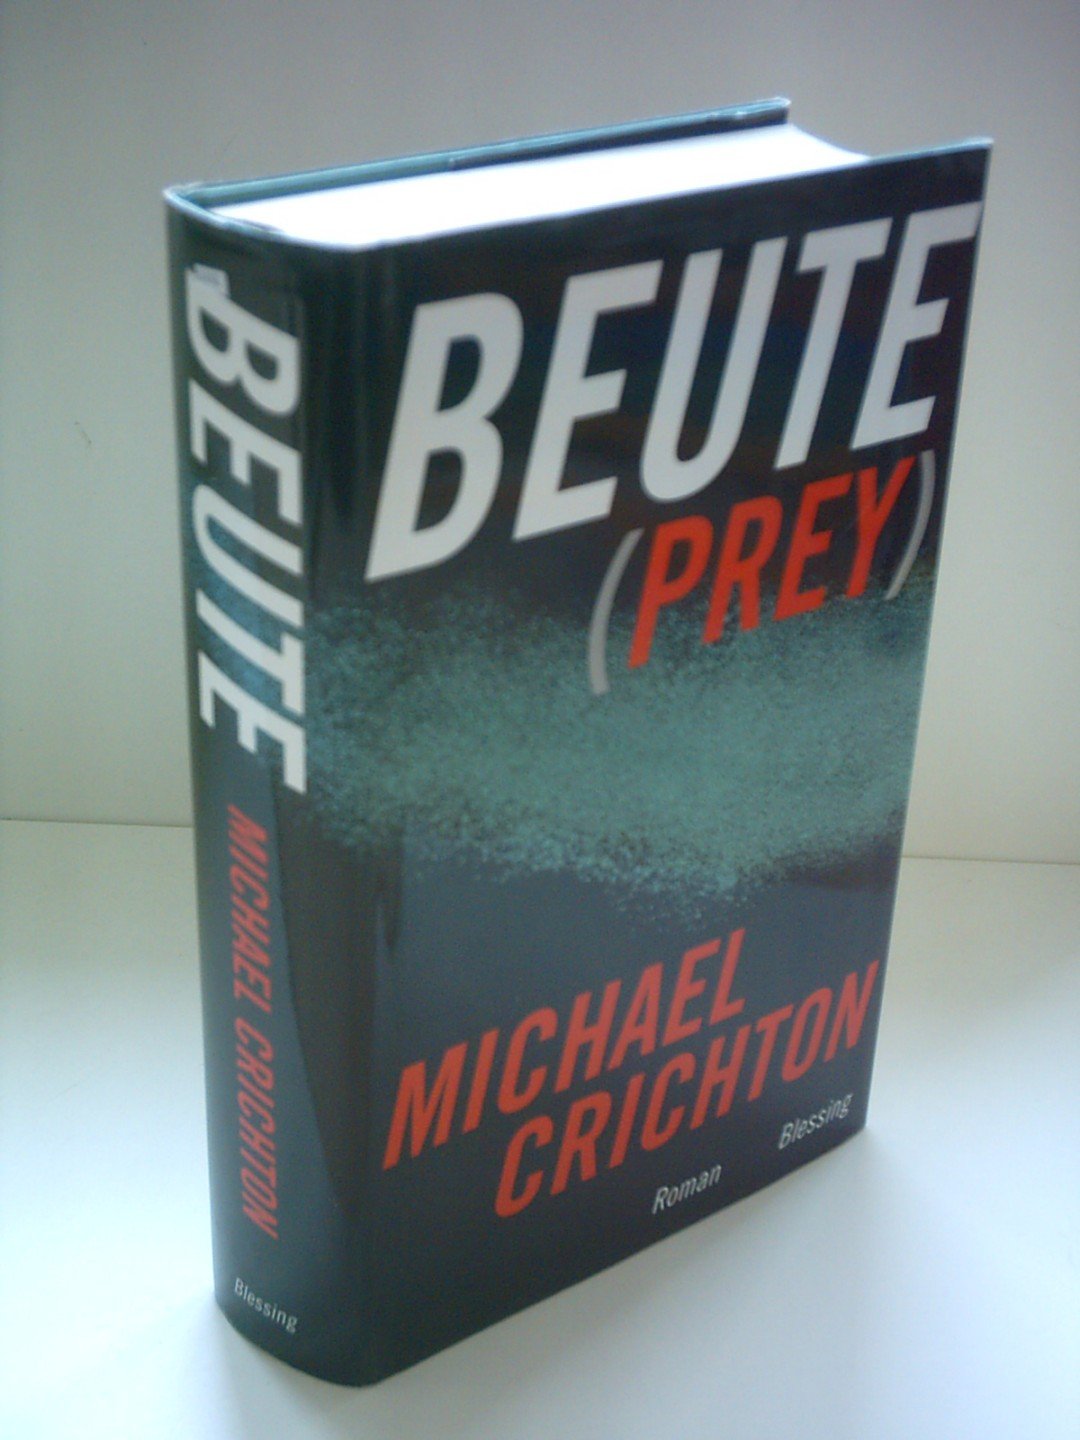 Beute (Prey) - Crichton, Michael